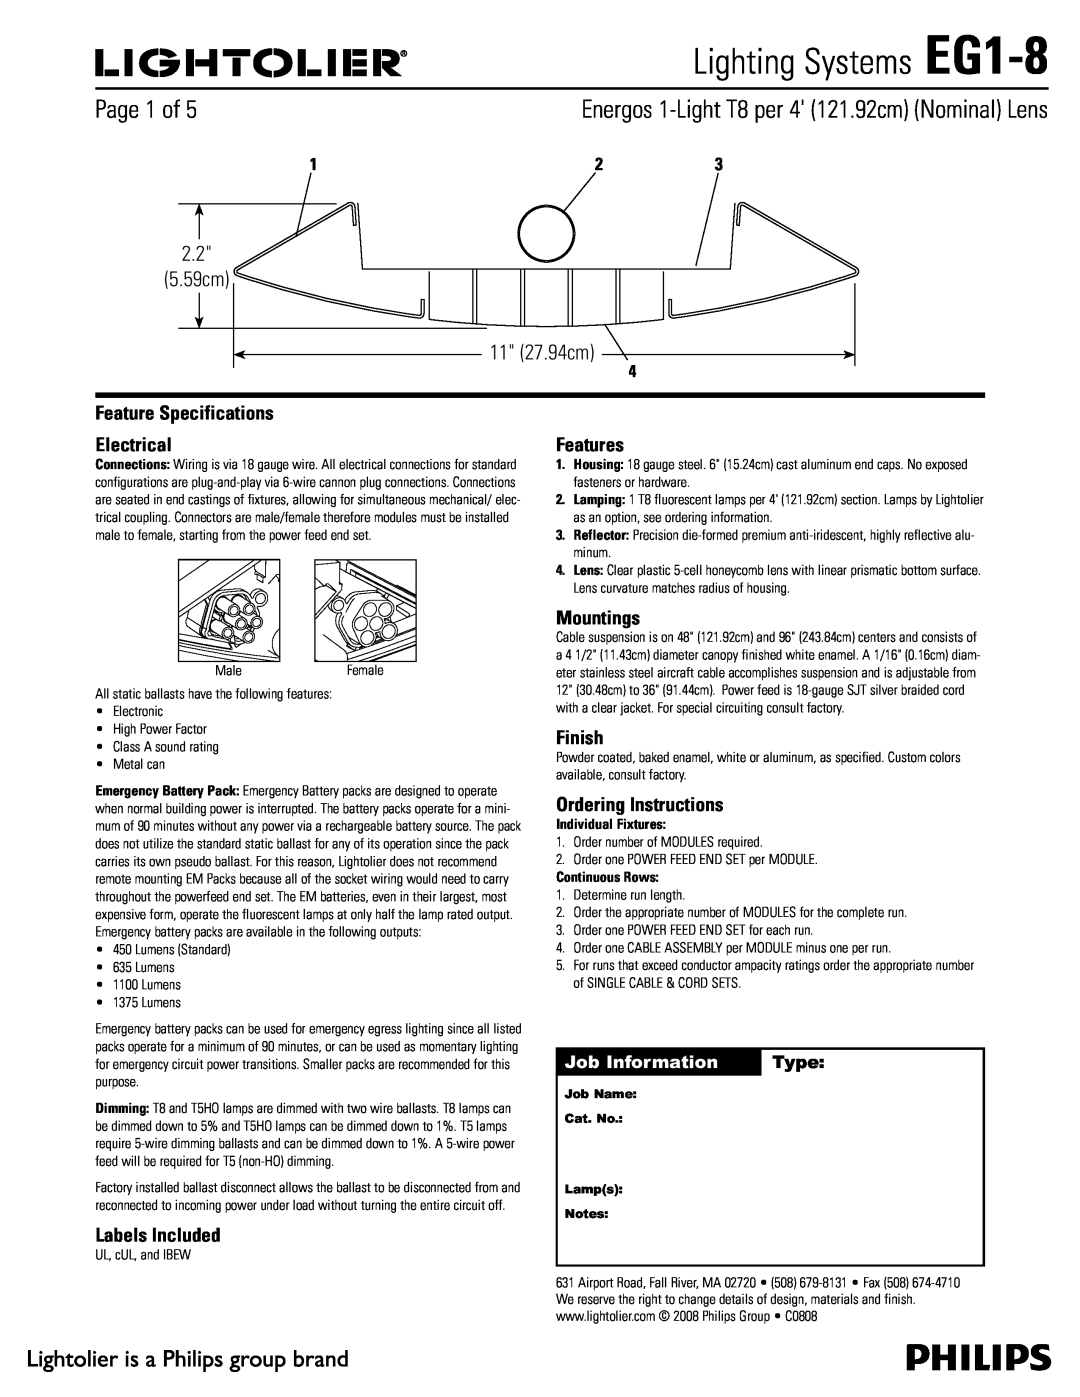 Lightolier specifications Lighting Systems EG1-8,  Dn  Dn, Job Information, Type 